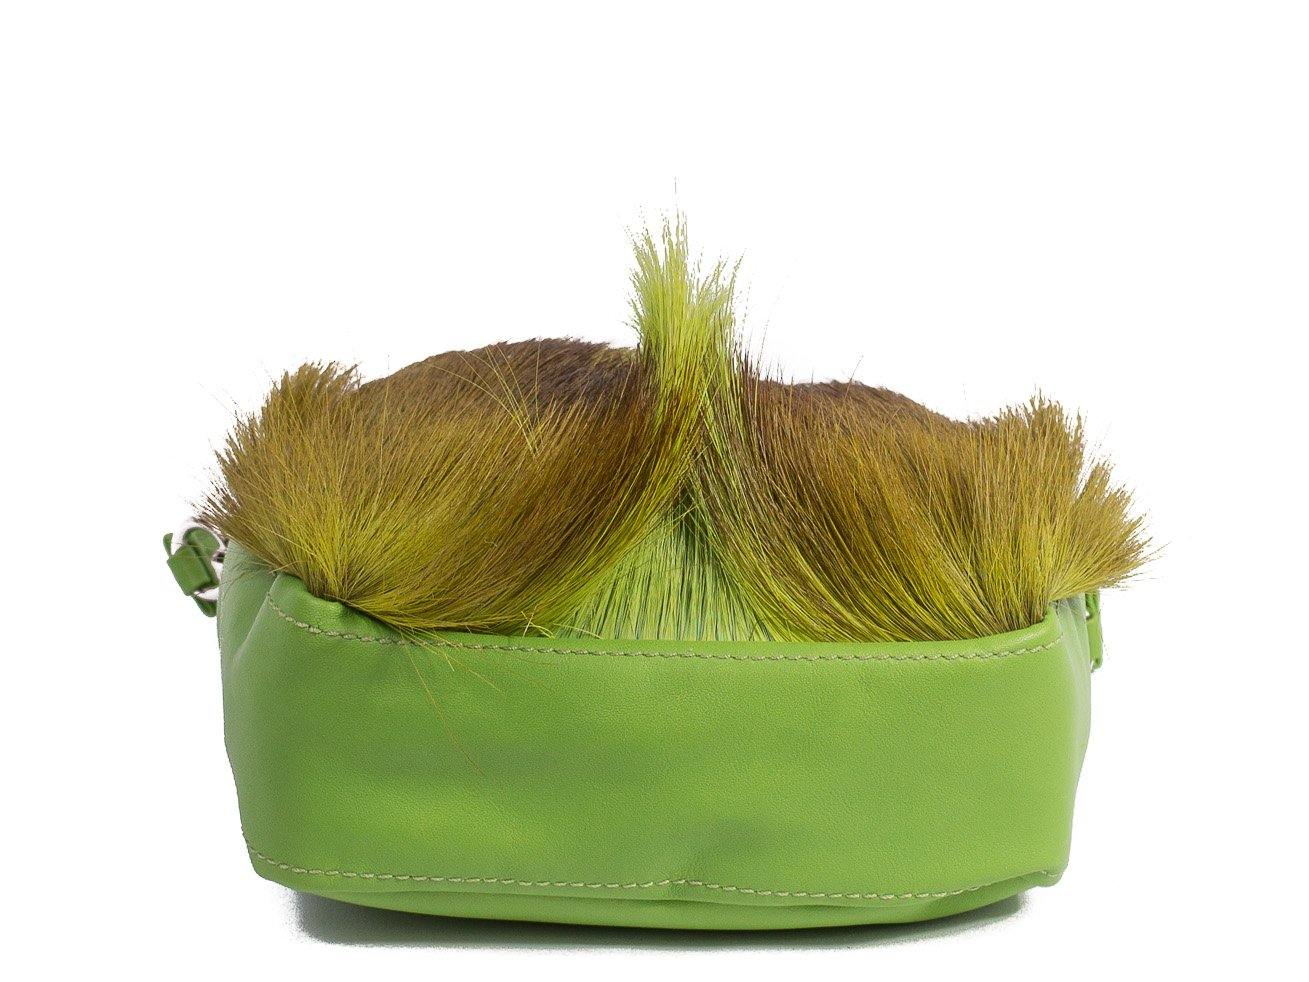 sherene melinda springbok hair-on-hide lime green leather pouch bag Fan bottom